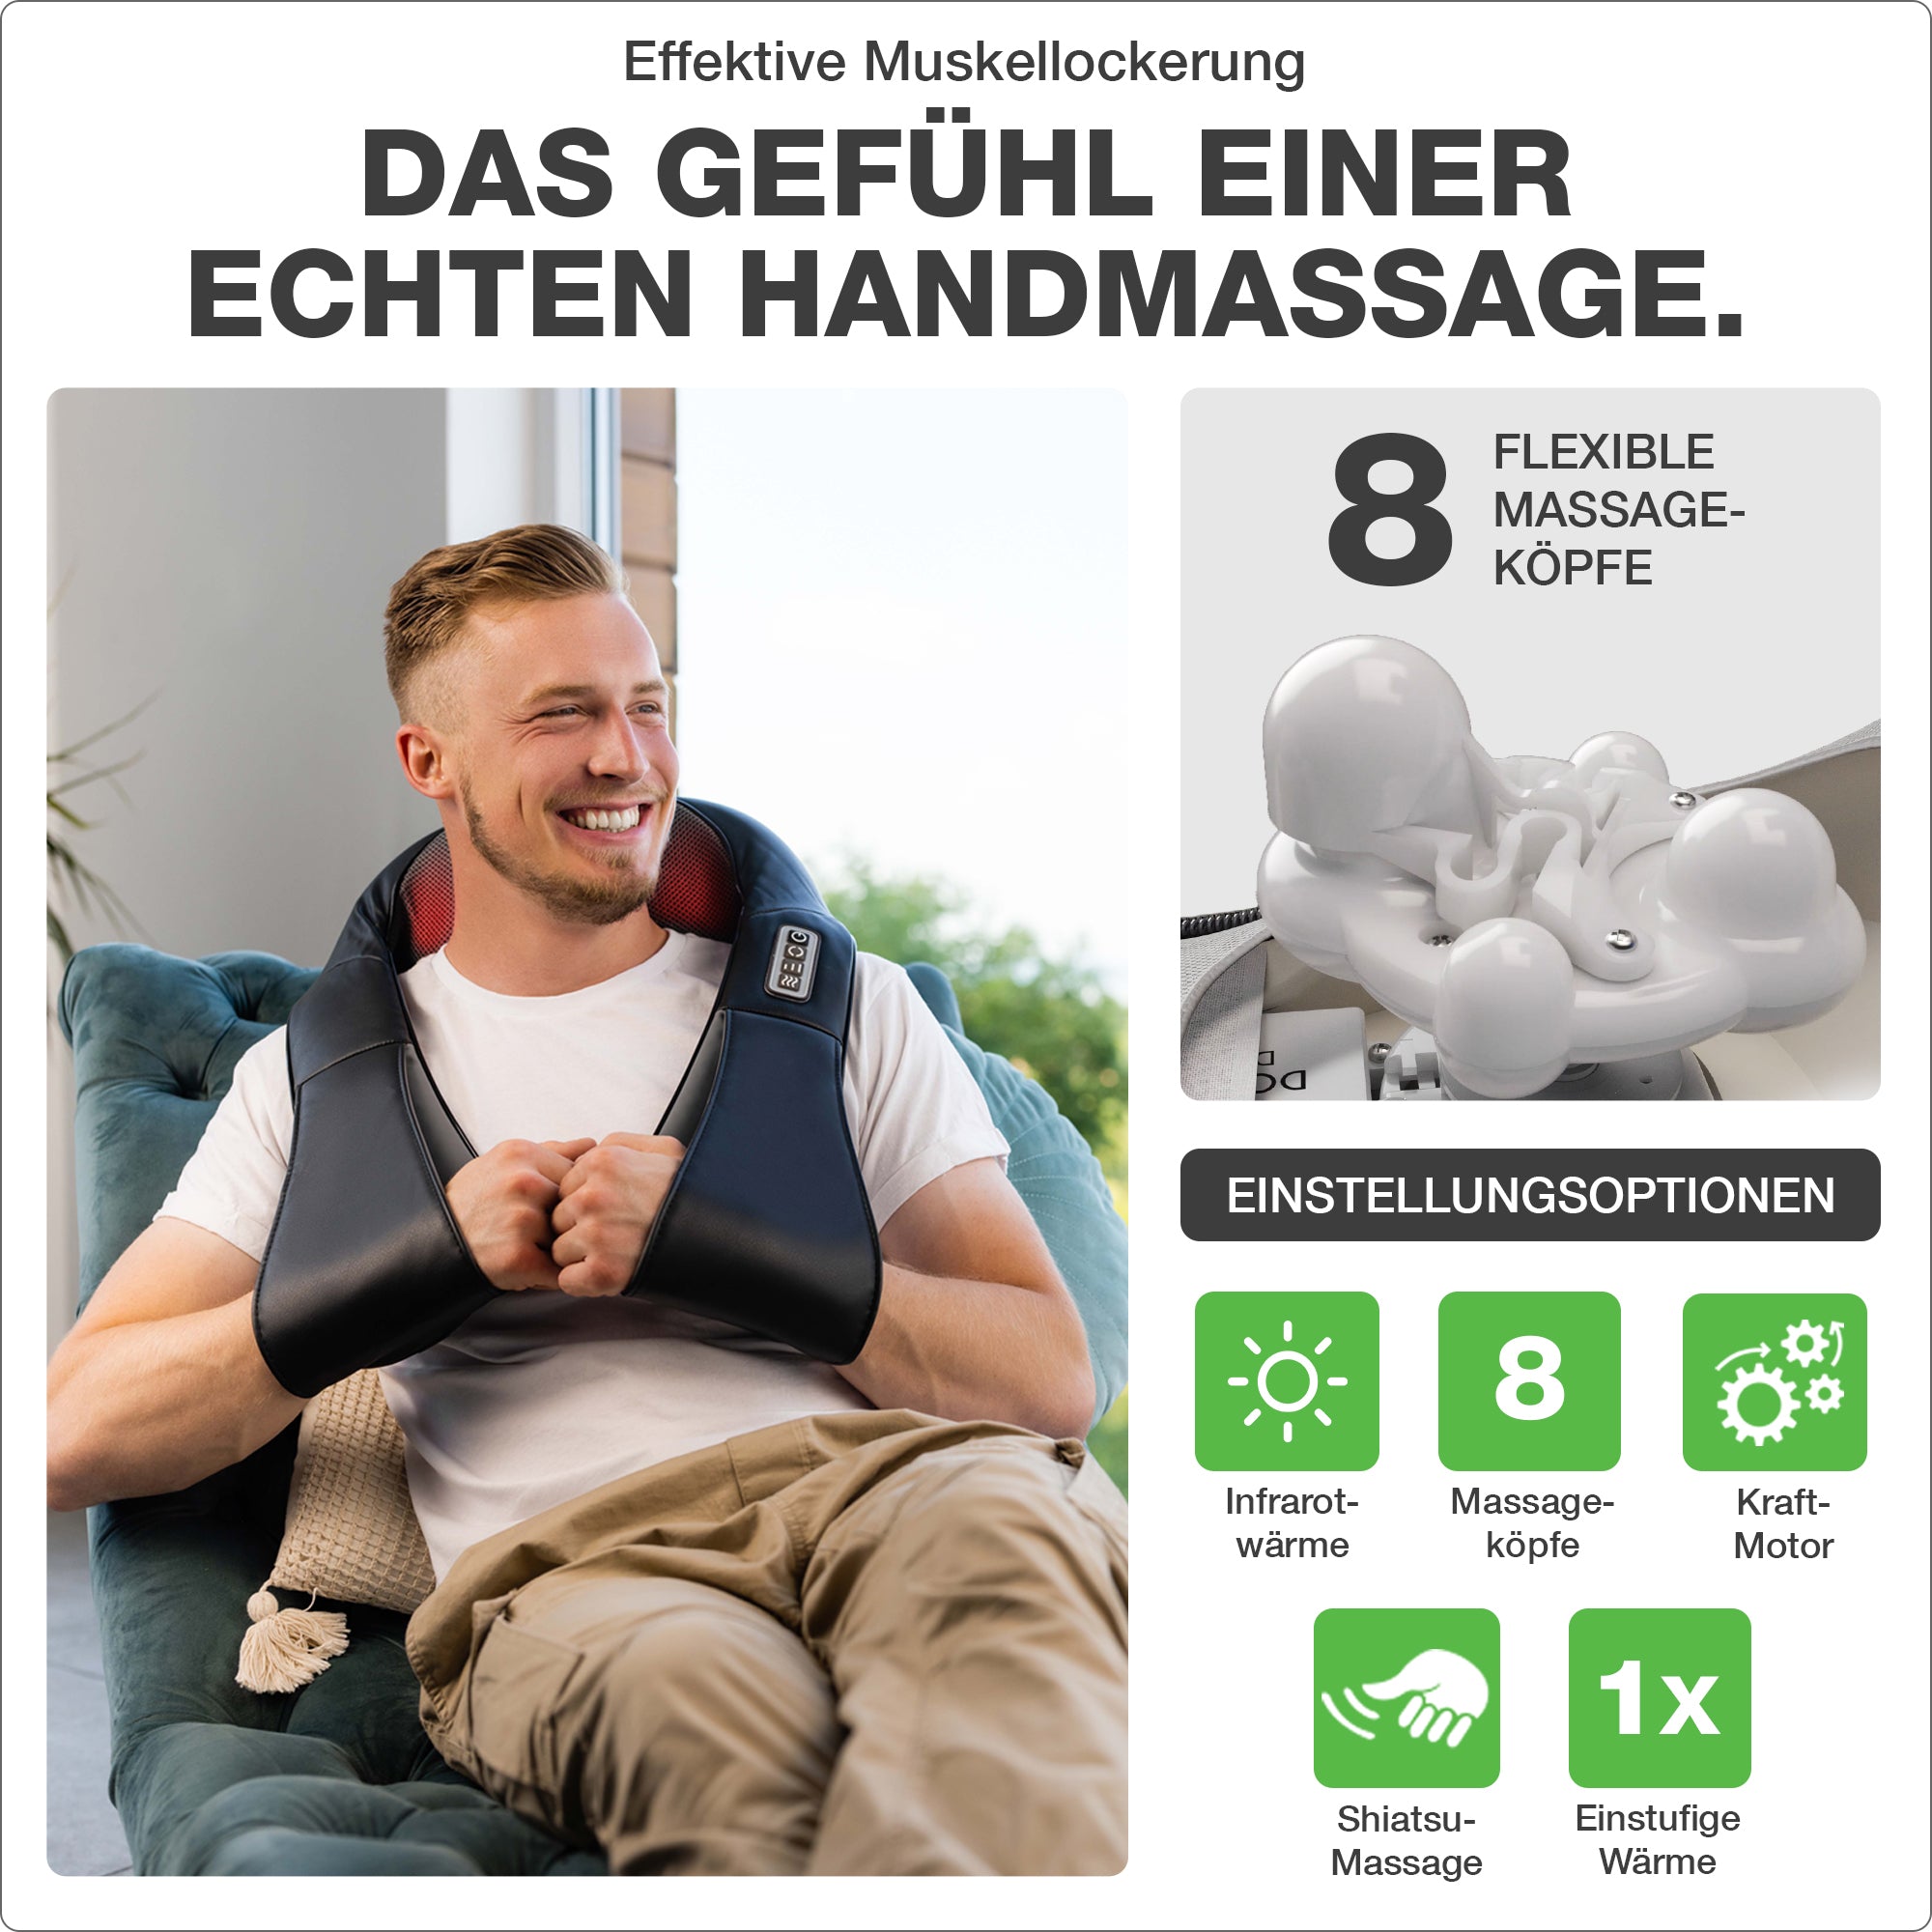 Das Gefühl einer echten Handmassage. Einstellungsoptionen: Infrarotwärme, Kraftmotor, Shiatsu-Massage